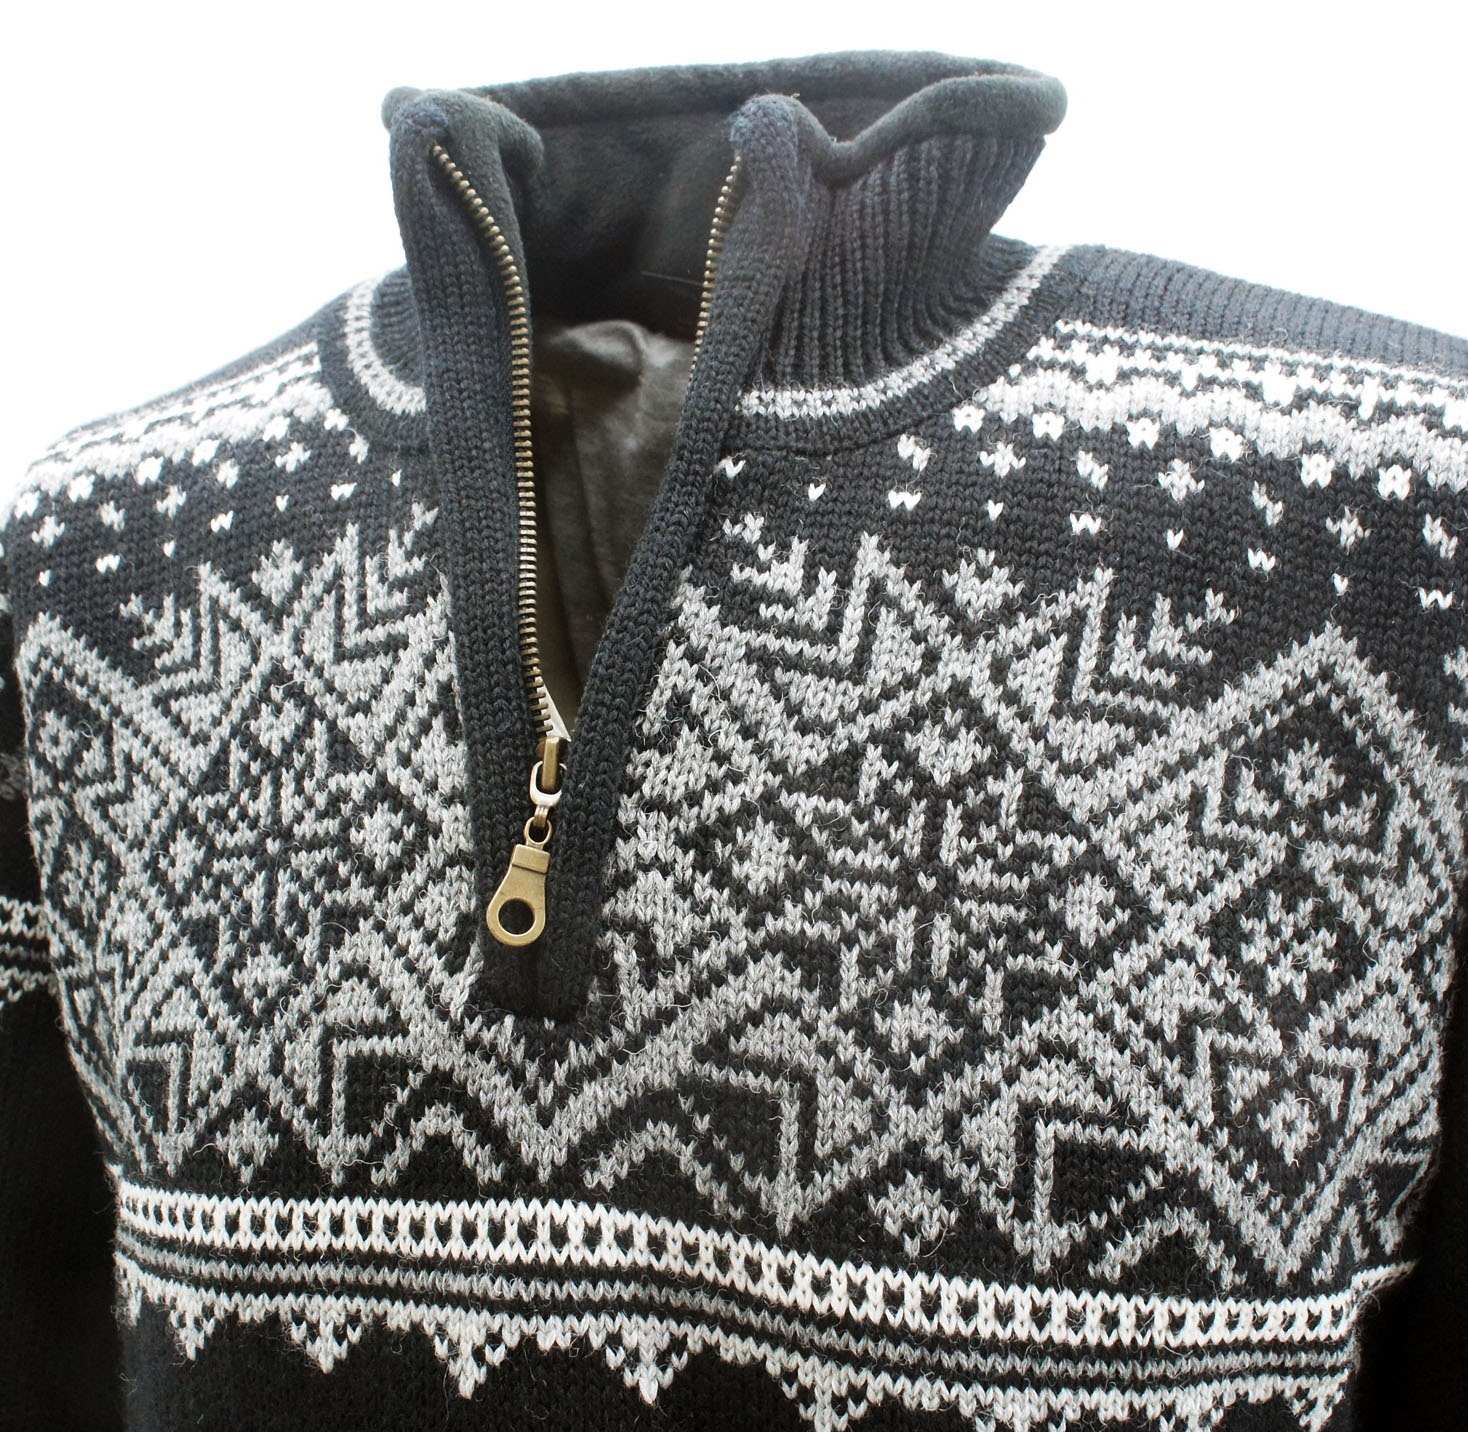 Größen schwarz Gjestal exclusive Zip Pullover 100% Norwegian Wool Wolle versch